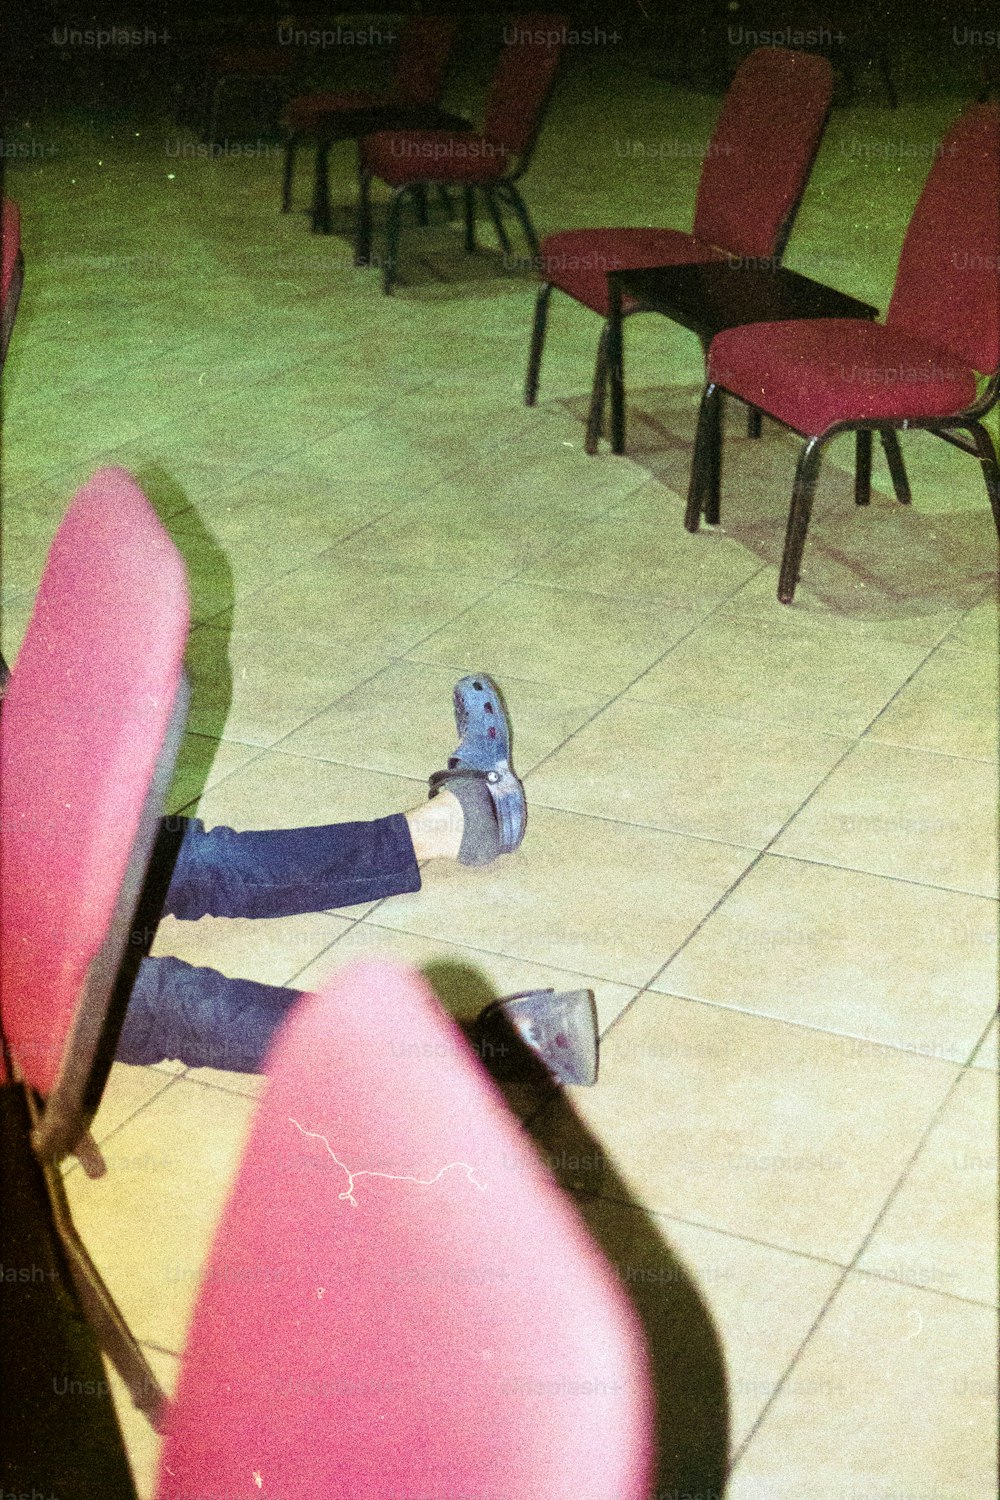 une personne allongée sur le sol, les pieds sur une chaise ;